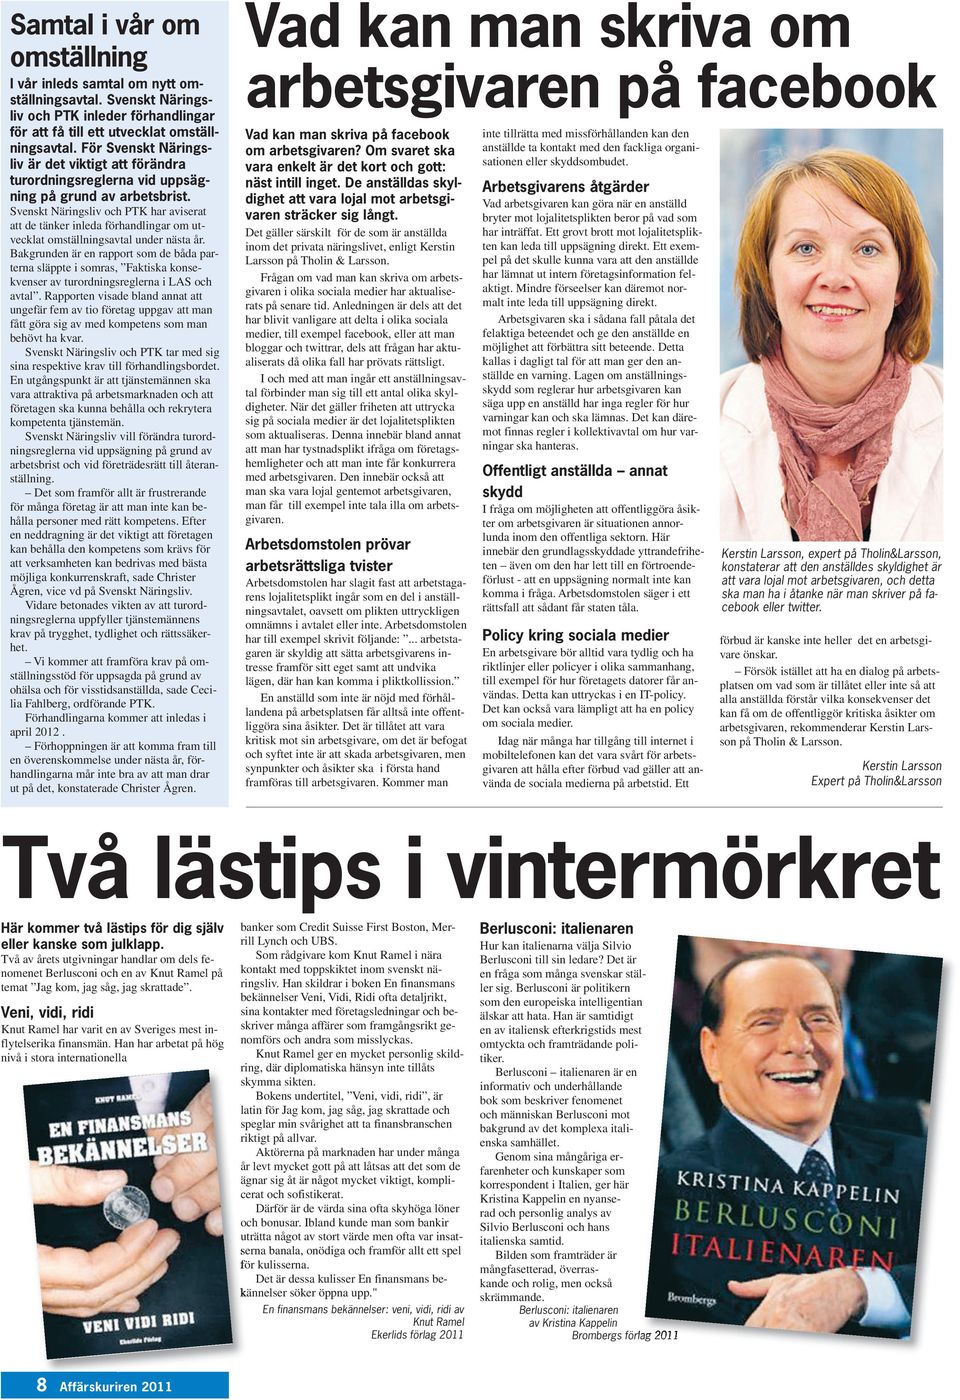 Svenskt Näringsliv och PTK har aviserat att de tänker inleda förhandlingar om utvecklat omställningsavtal under nästa år.